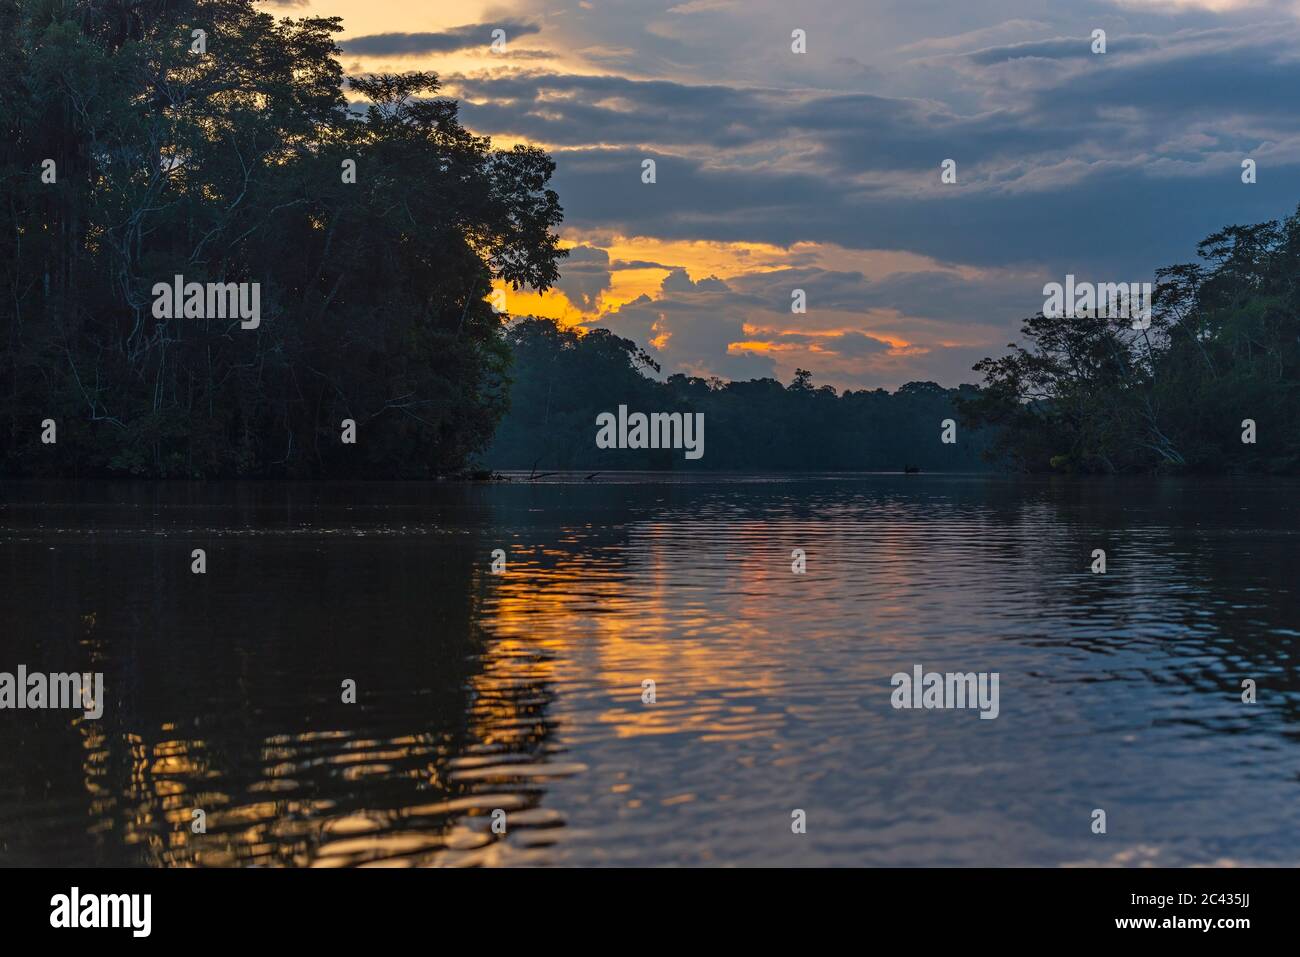 Reflection of the Amazon rainforest at sunset, Yasuni national park, Ecuador. Stock Photo